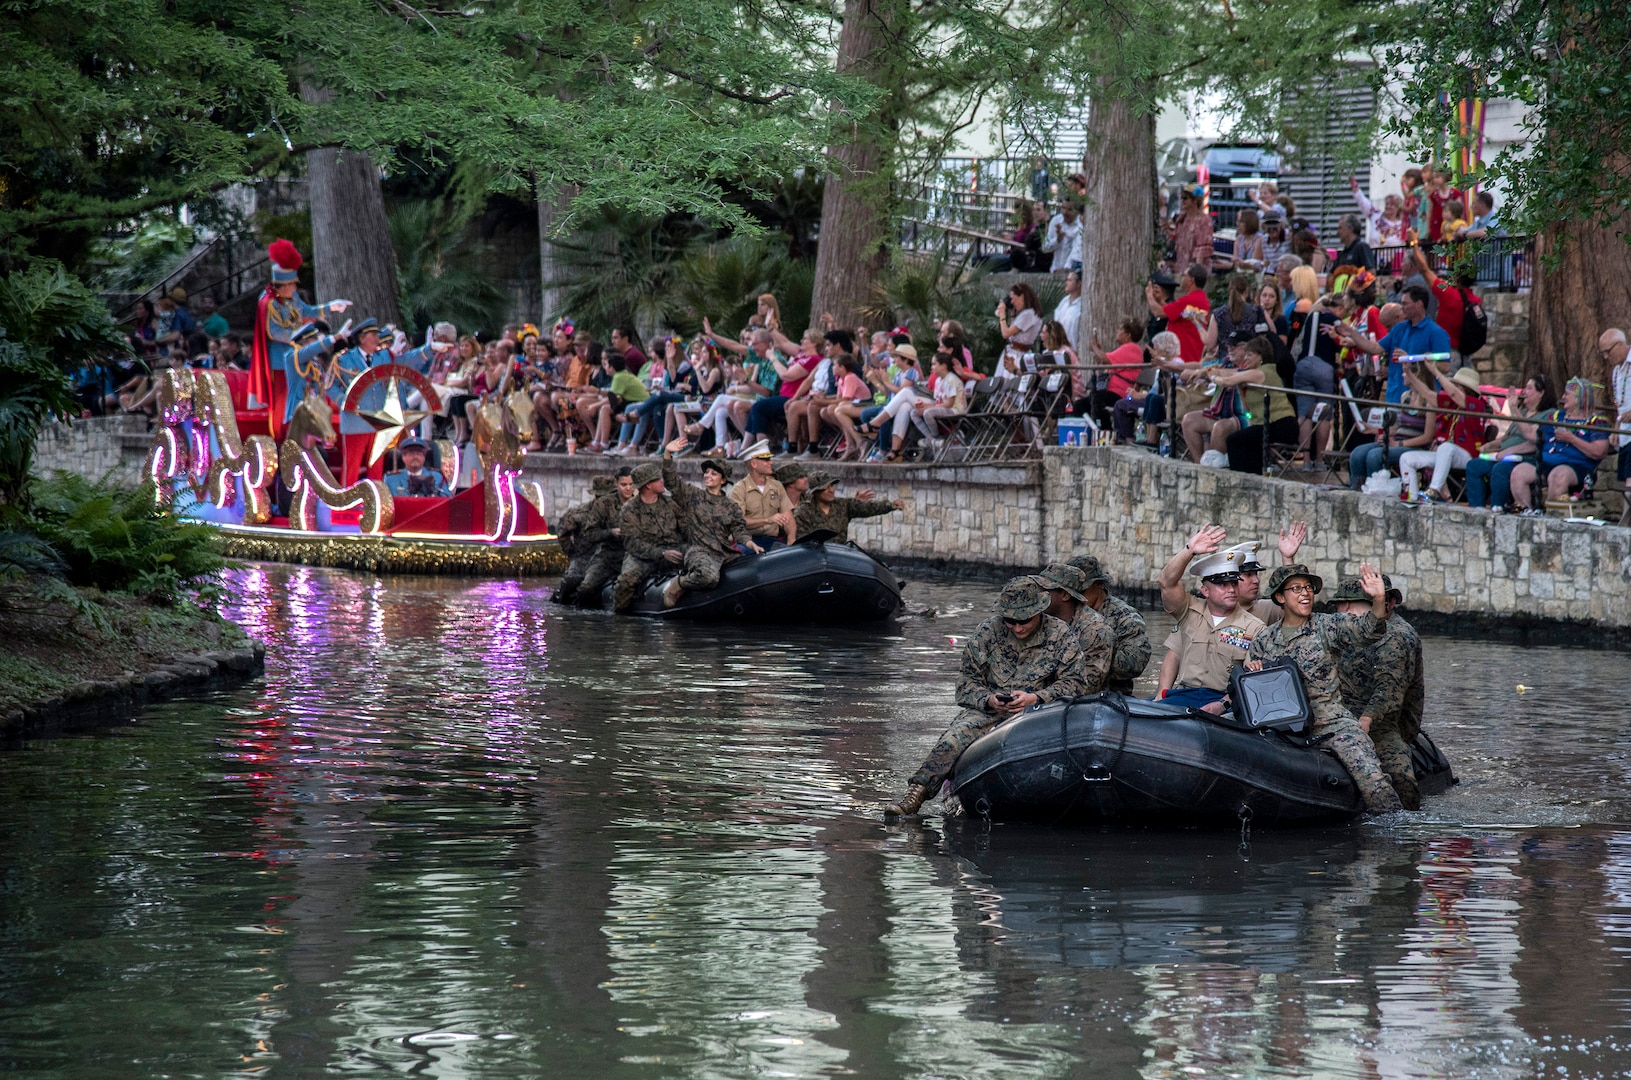 2018 Texas Cavalier River Parade